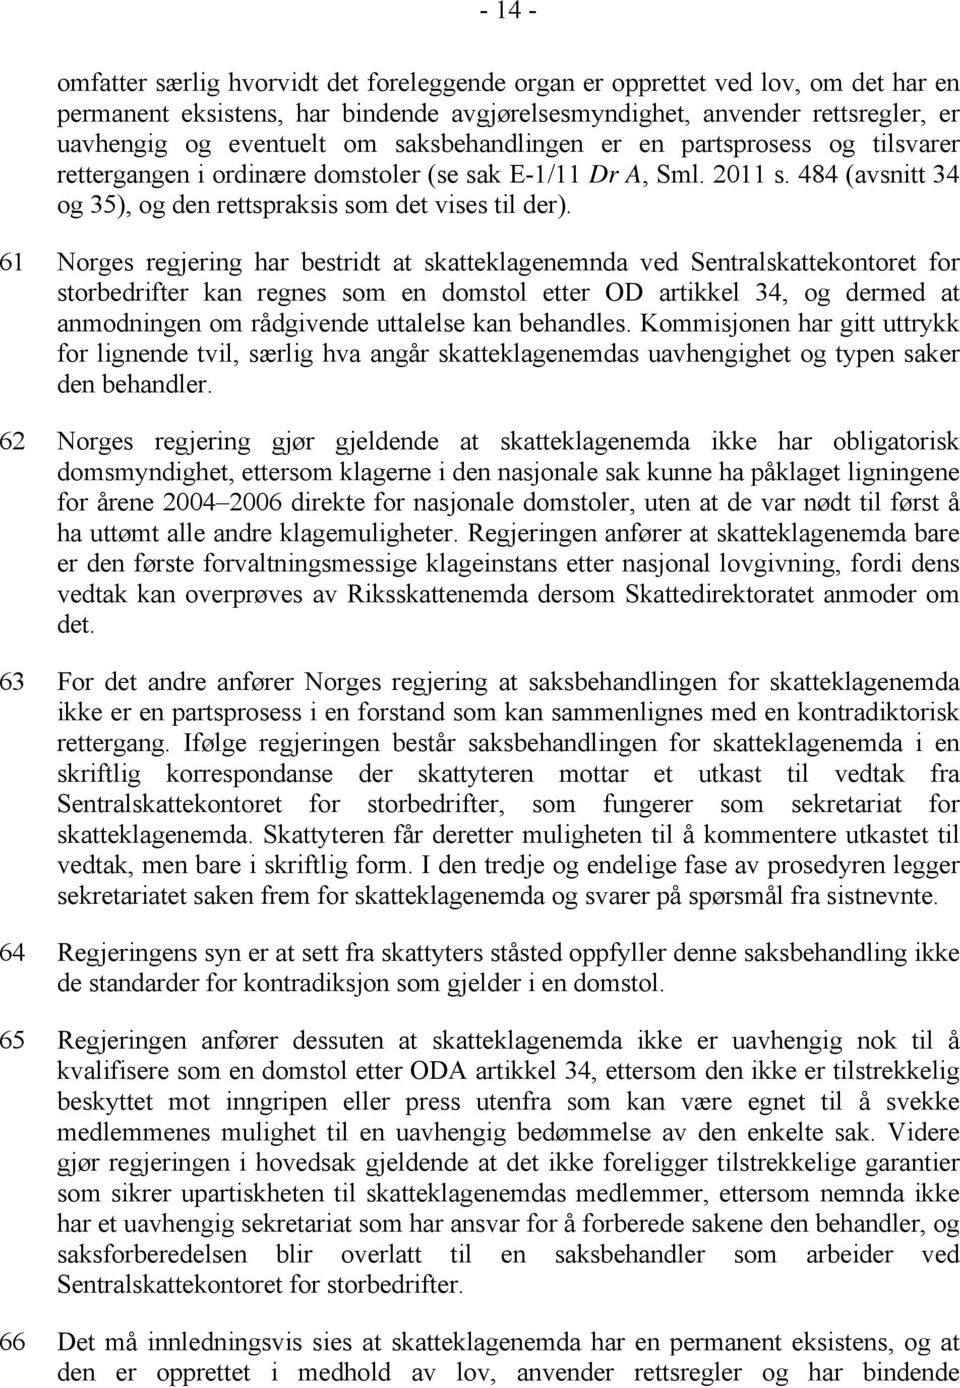 61 Norges regjering har bestridt at skatteklagenemnda ved Sentralskattekontoret for storbedrifter kan regnes som en domstol etter OD artikkel 34, og dermed at anmodningen om rådgivende uttalelse kan